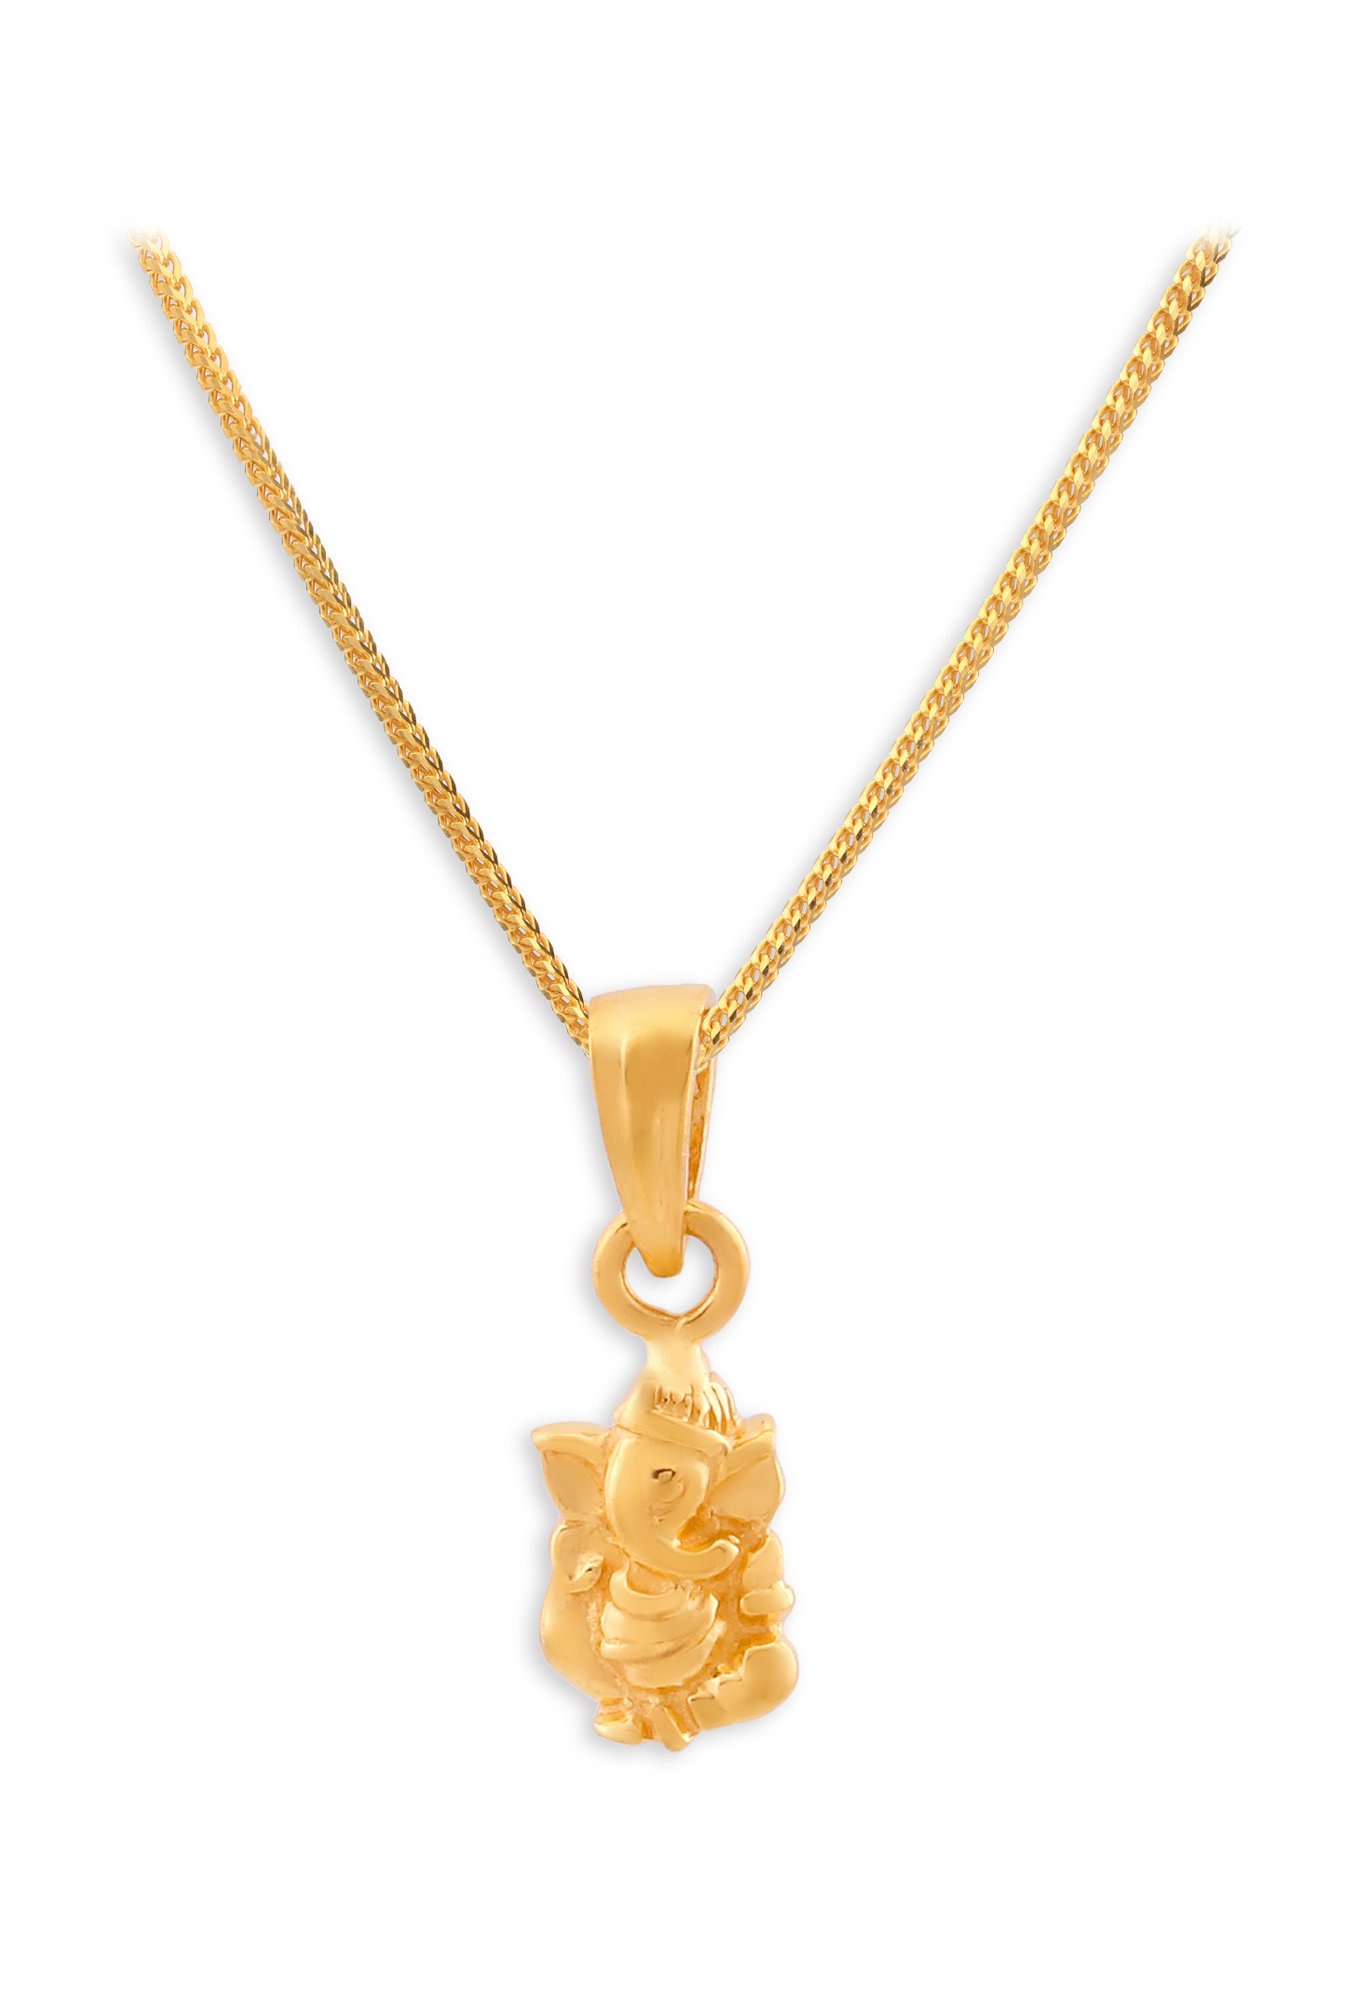 Buy Tanishq Ganesha 22k Gold Pendant 